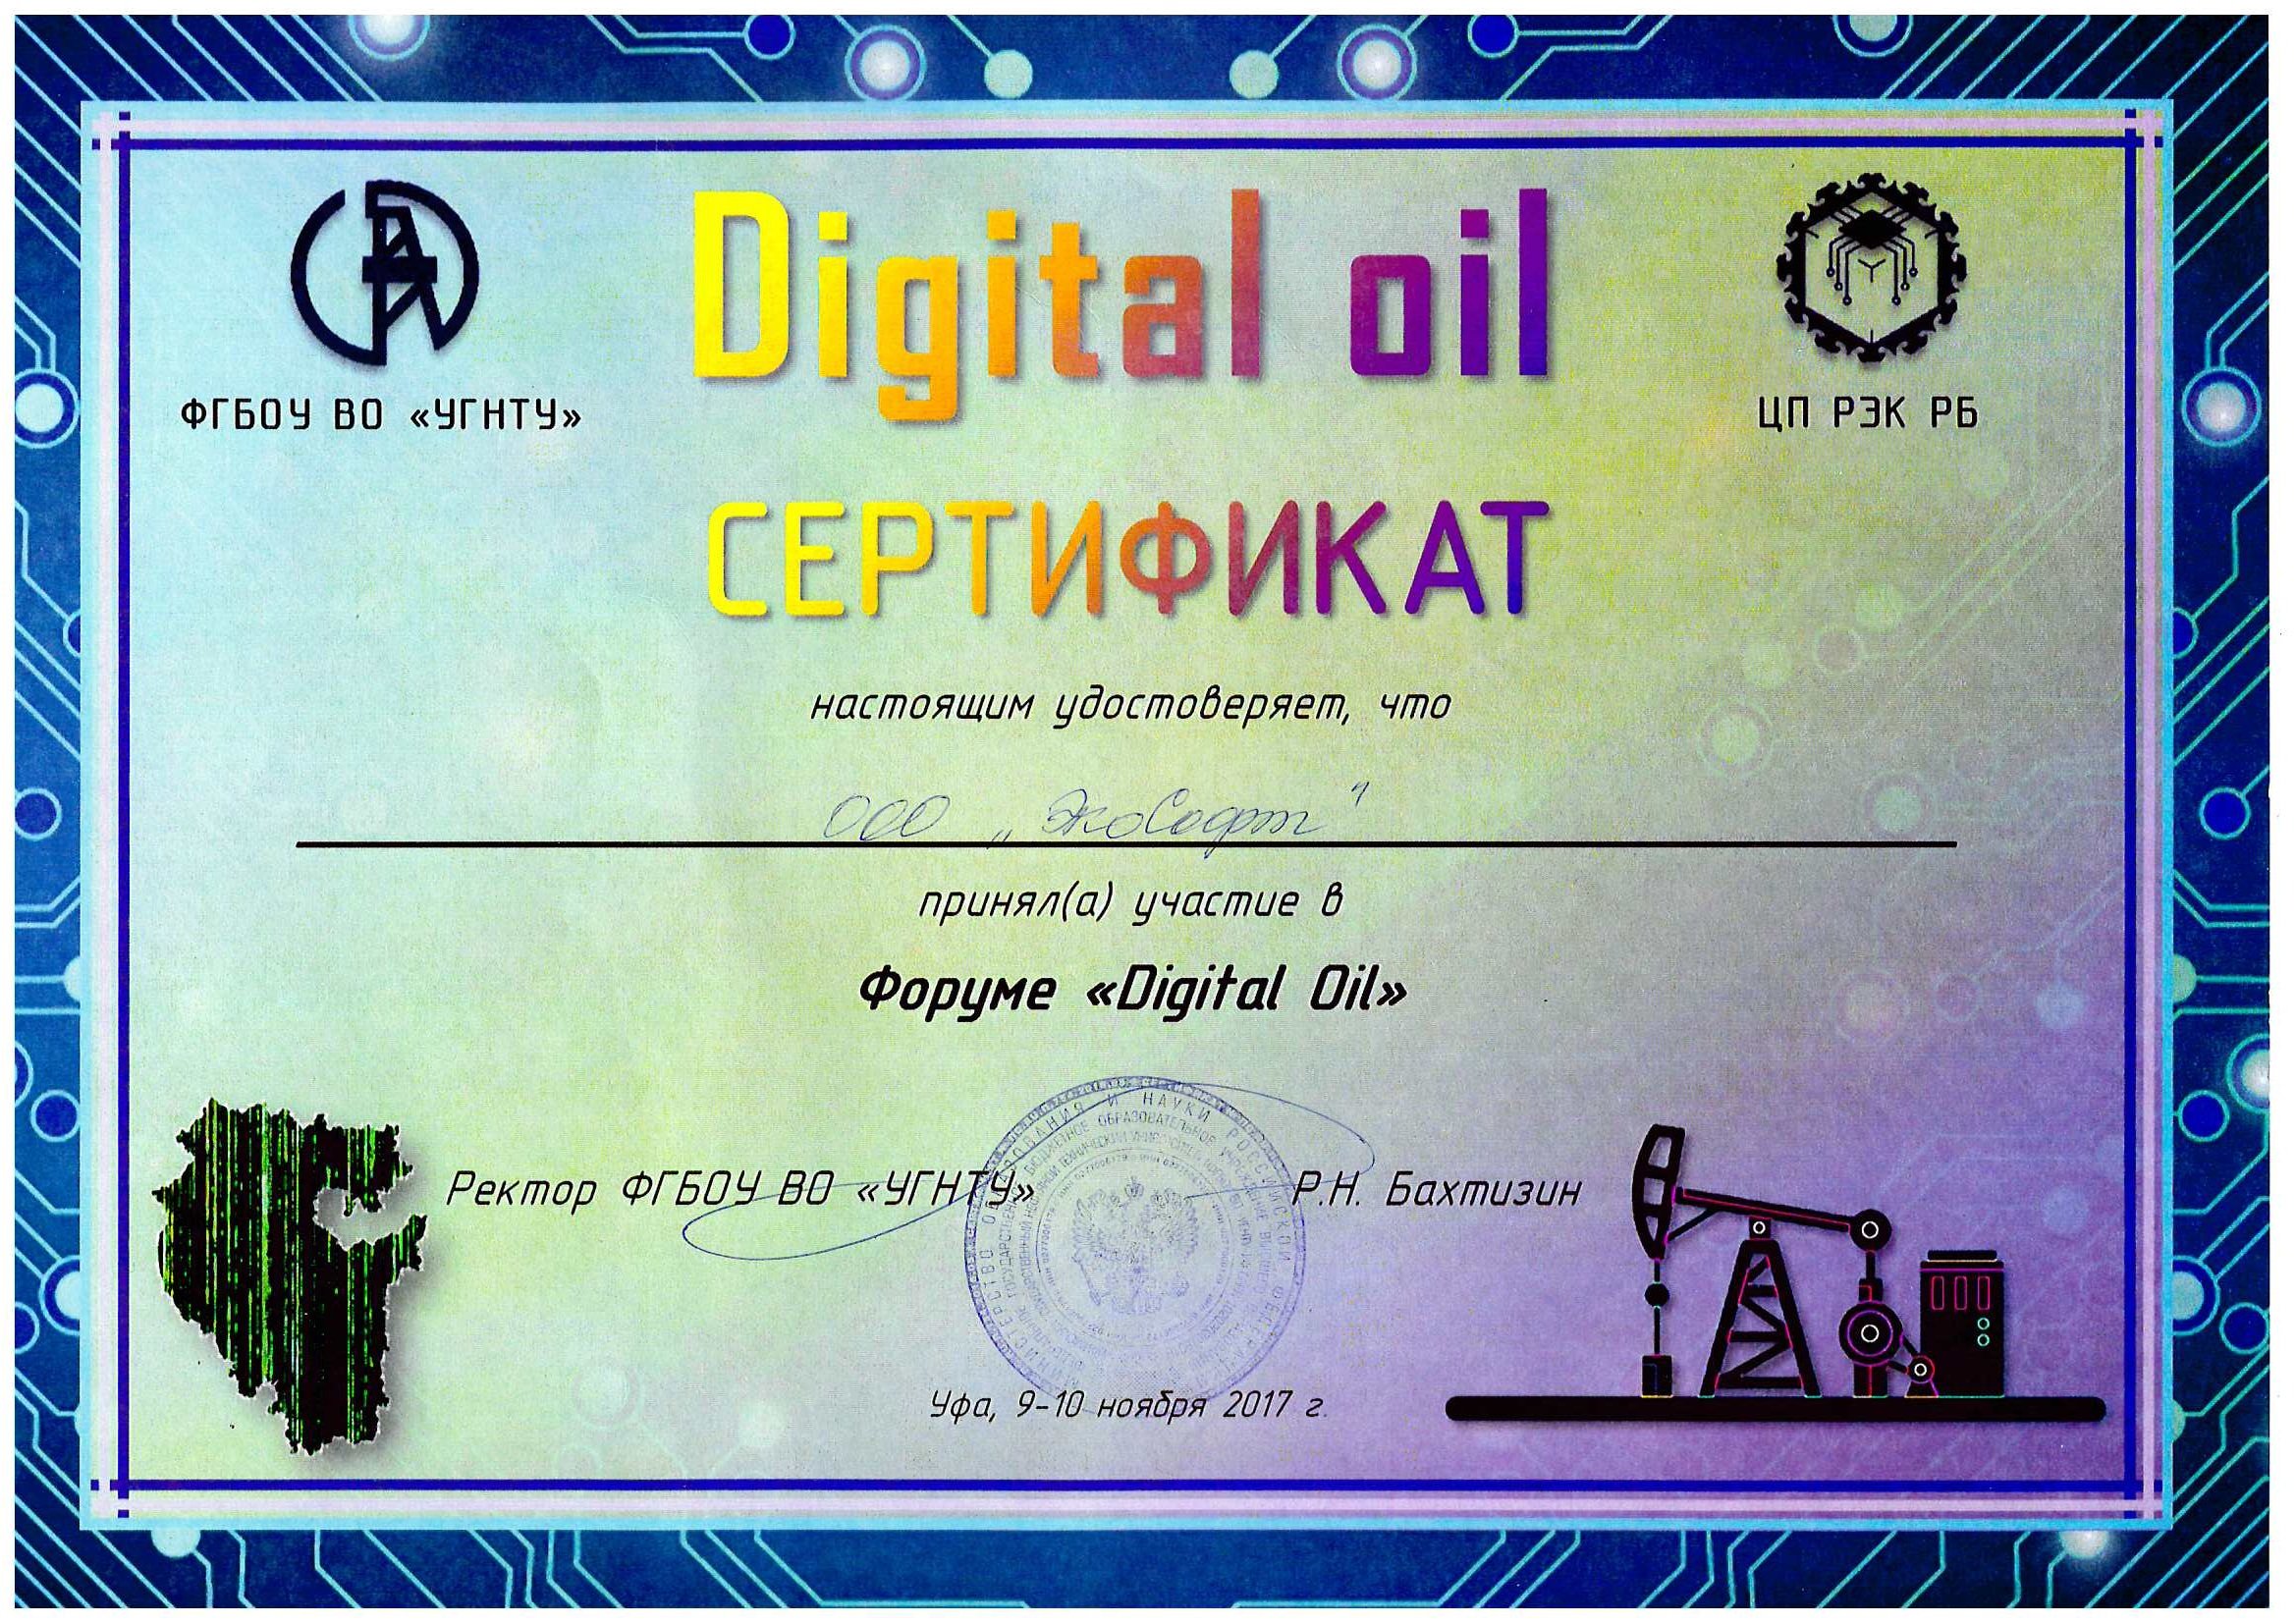 Forum-Digital-Oil.jpg